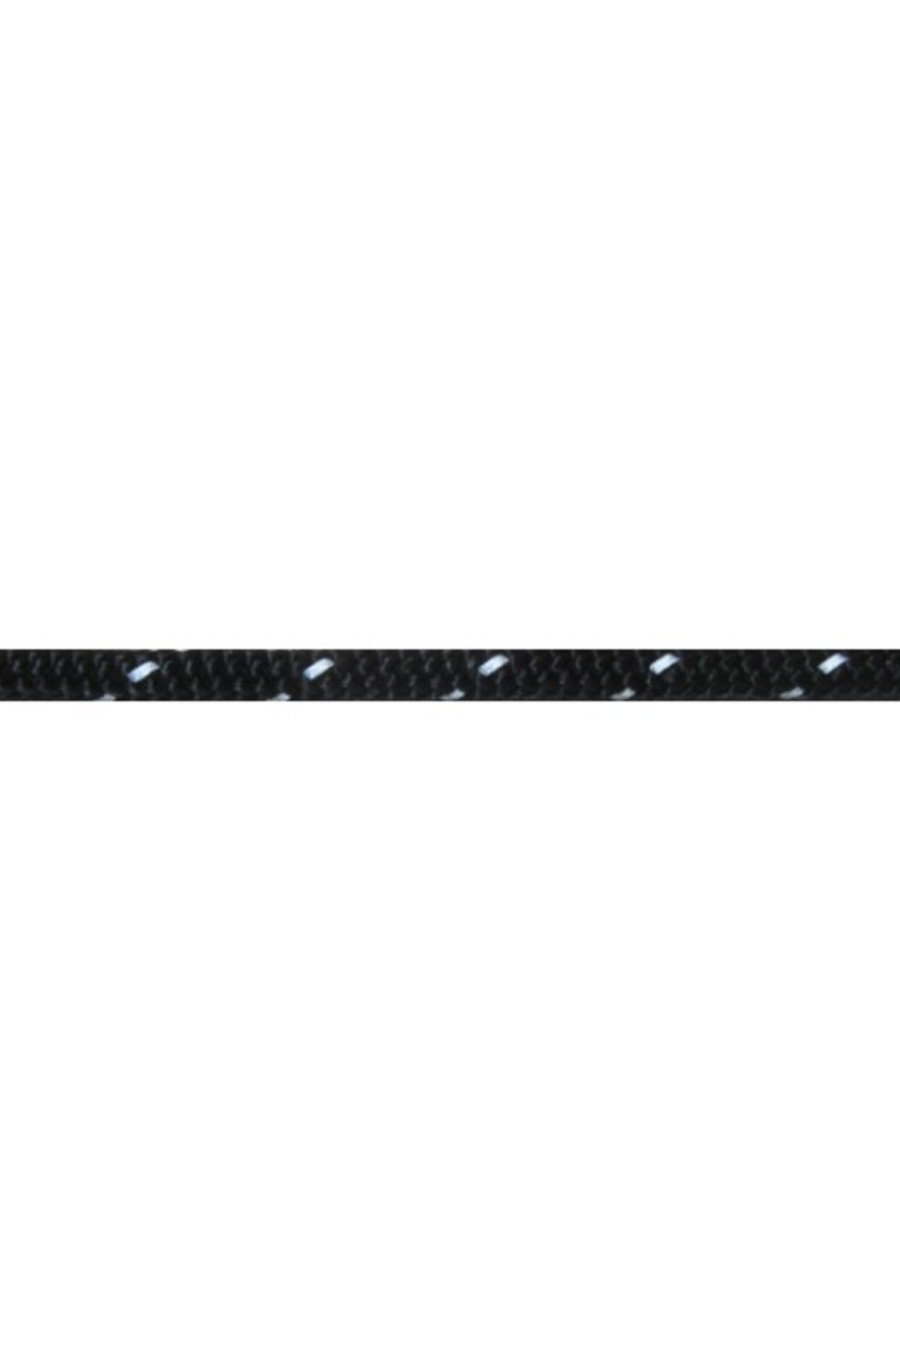 Sterling Rope 3mm Glow Cord / Meter